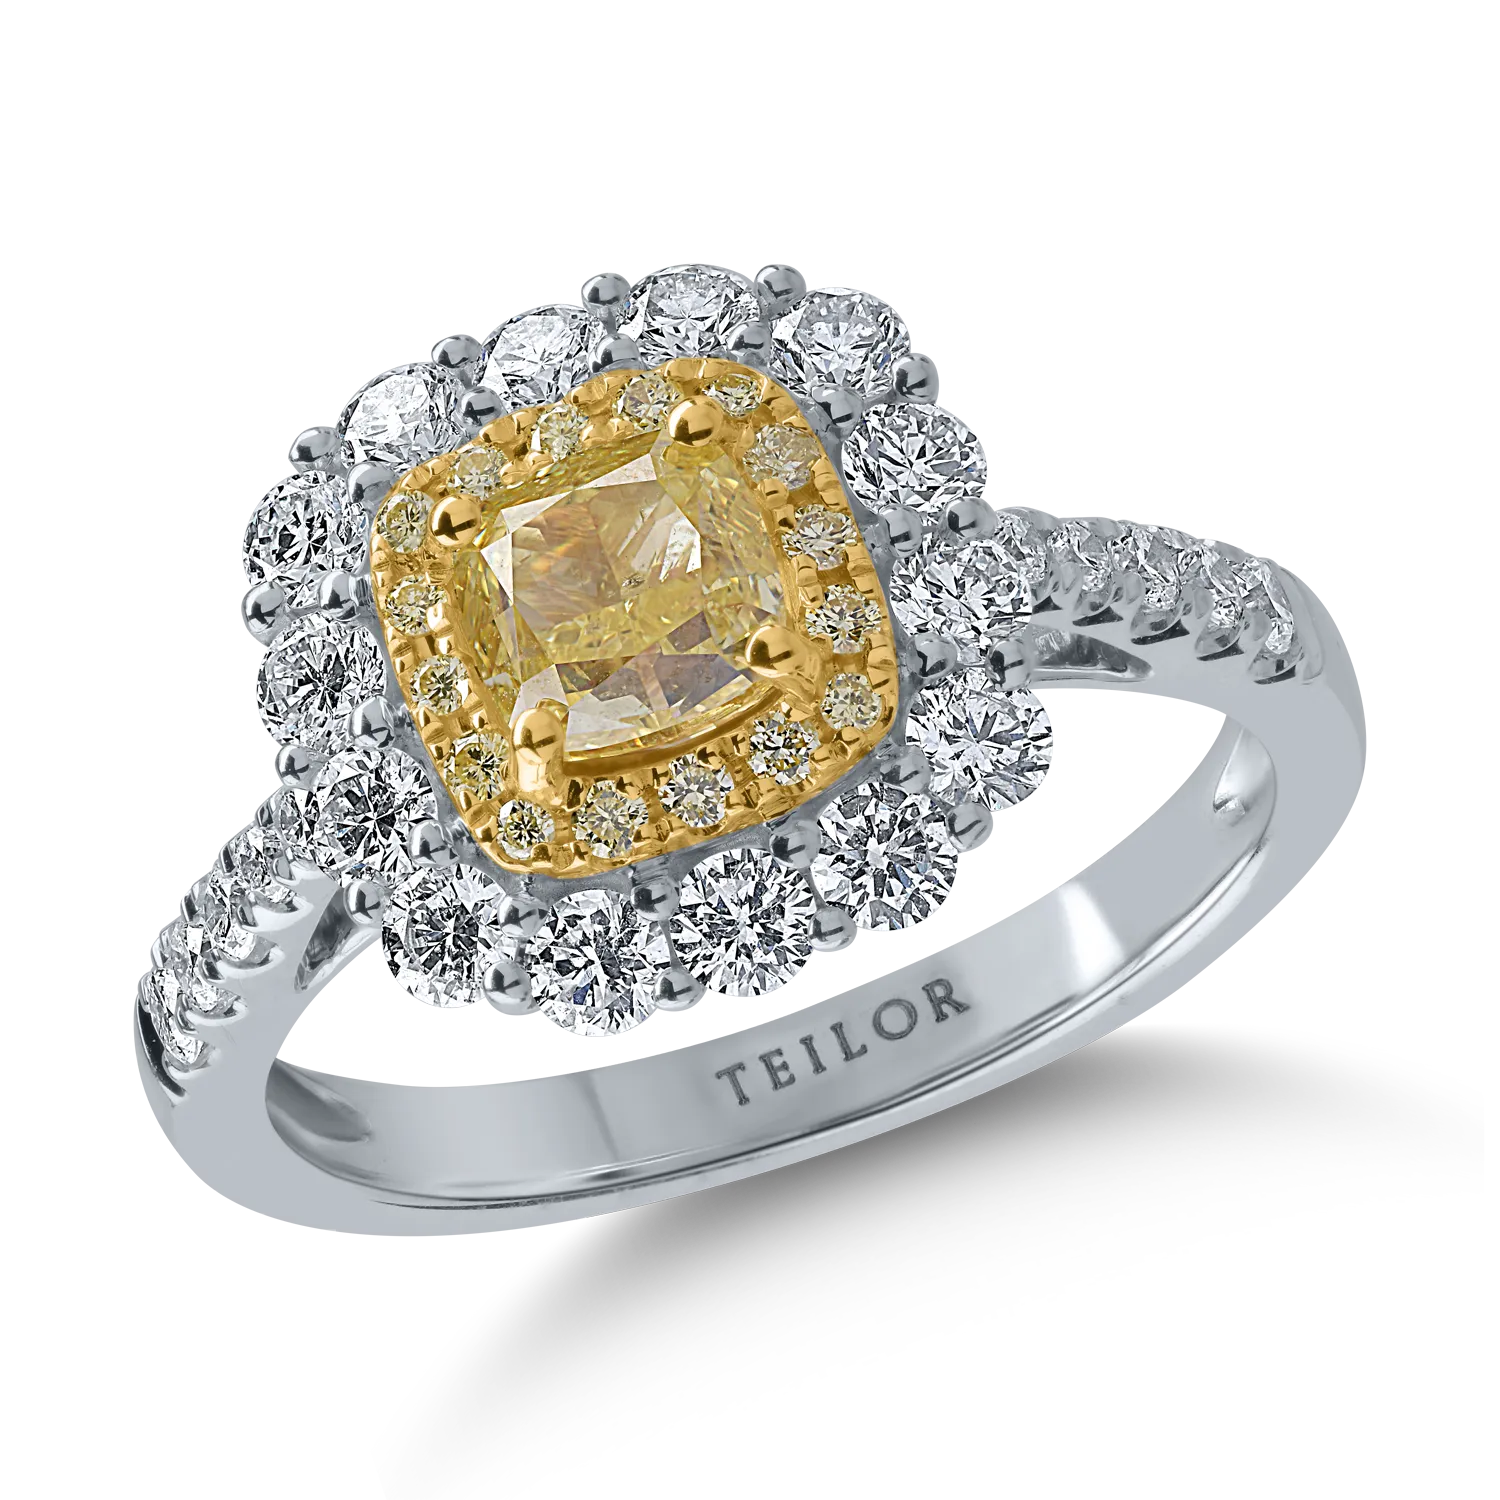 Inel din aur alb-galben cu diamante galbene de 1.12ct si diamante transparente de 0.88ct